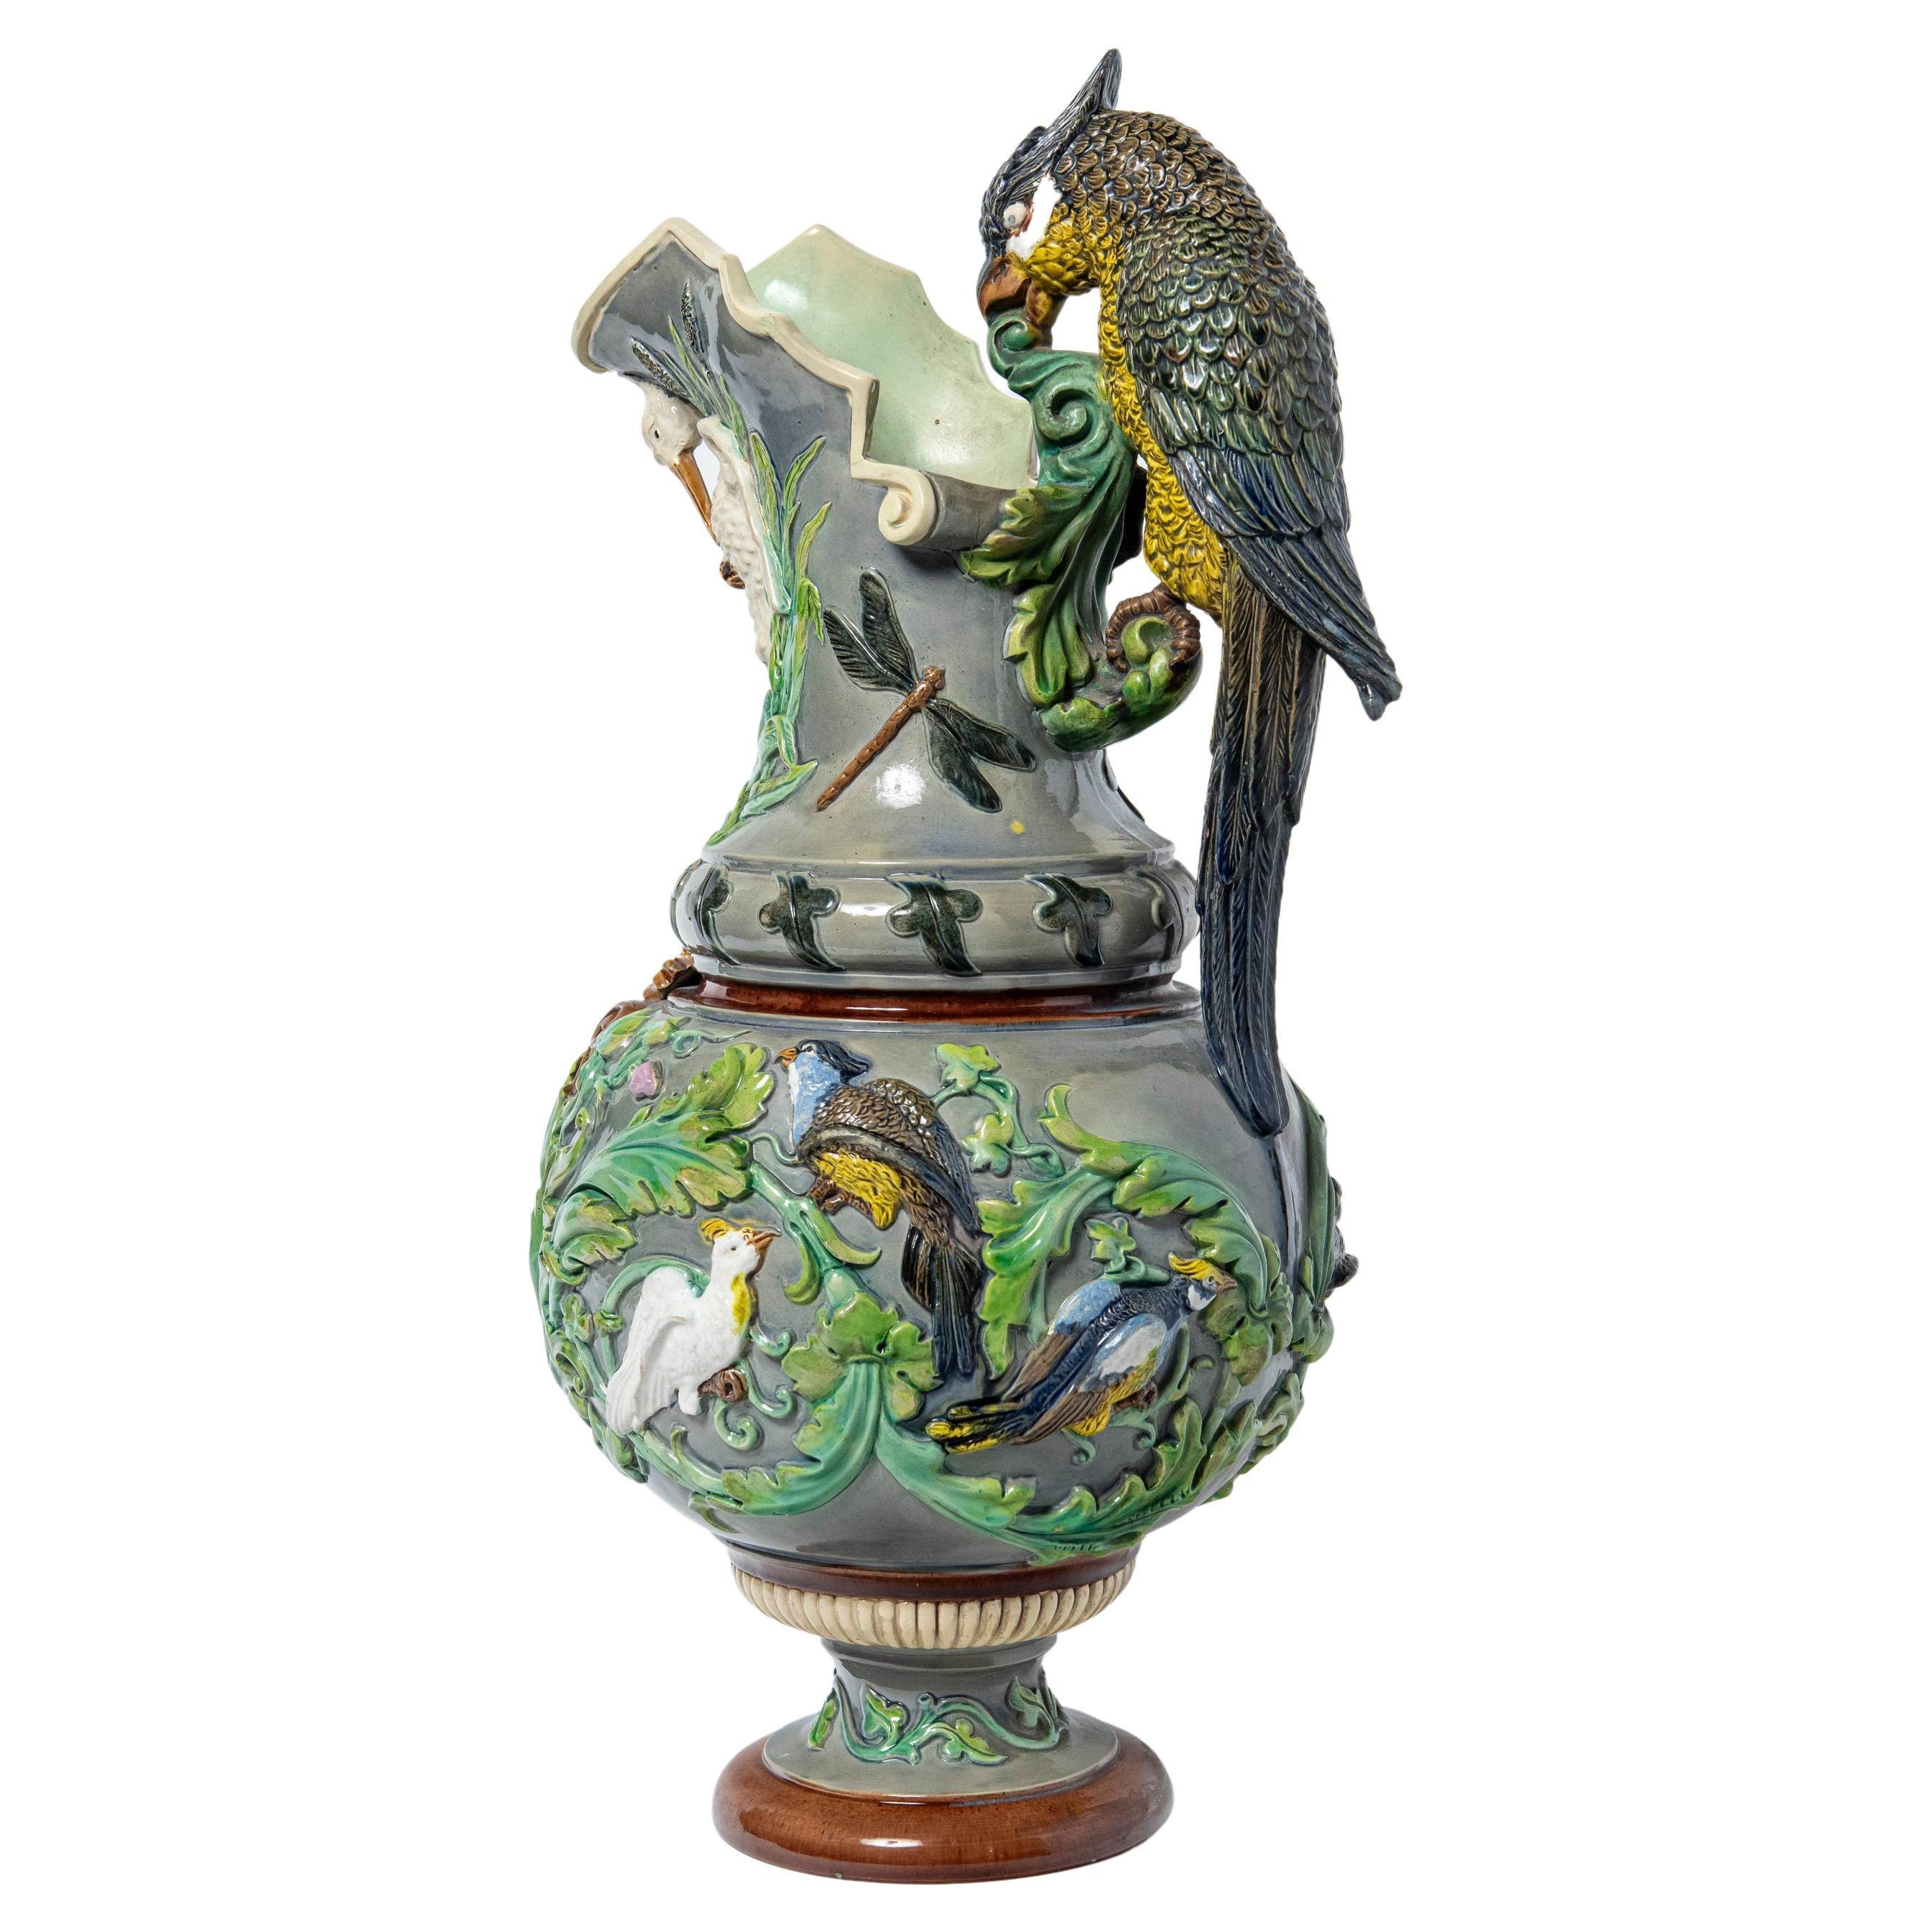 Jarre en céramique peinte avec perroquet par Johann Maresch. Autriche, vers 1900.